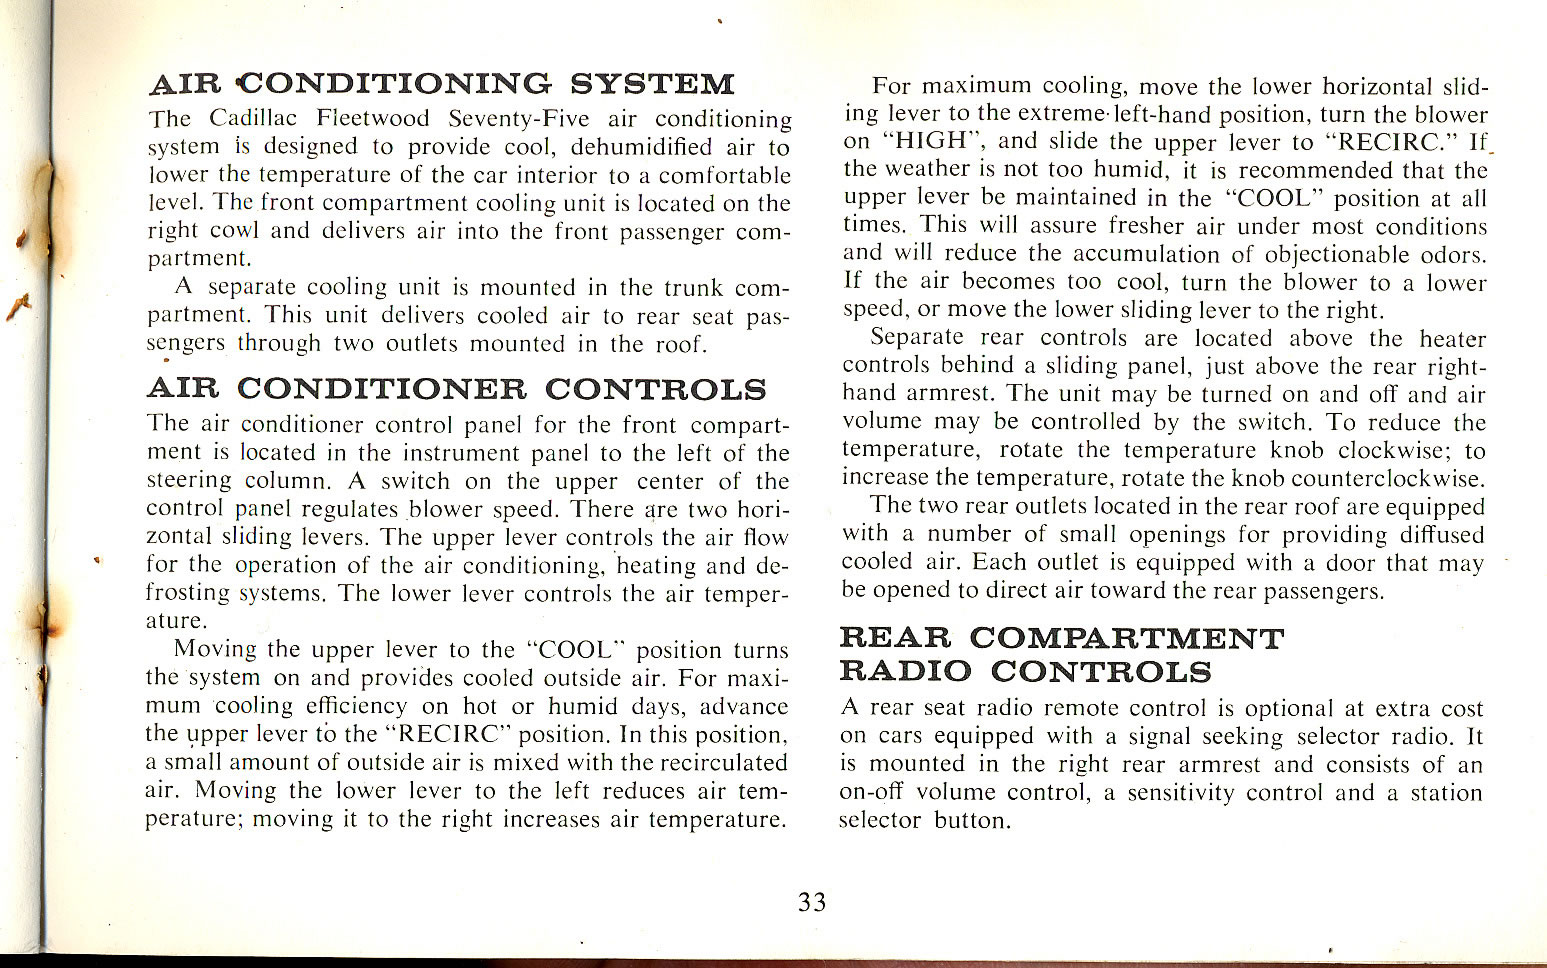 1965 Cadillac Manual-33